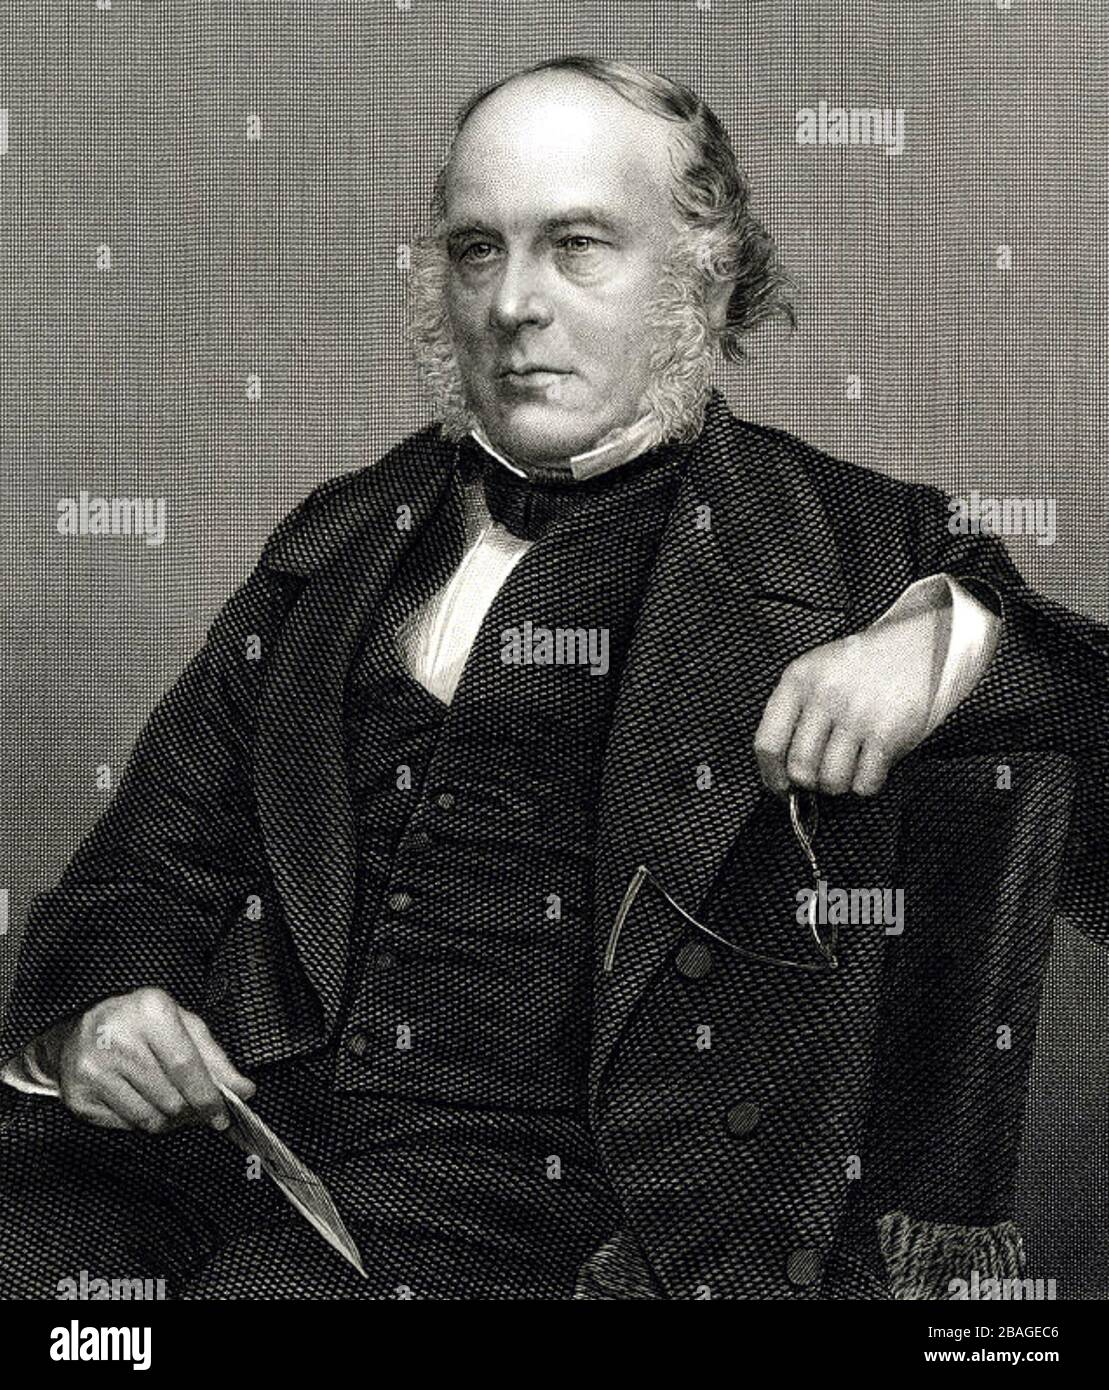 ROWLAND HILL (1795-1879) Englischlehrer, Erfinder, Postsystem-Reformer Stockfoto